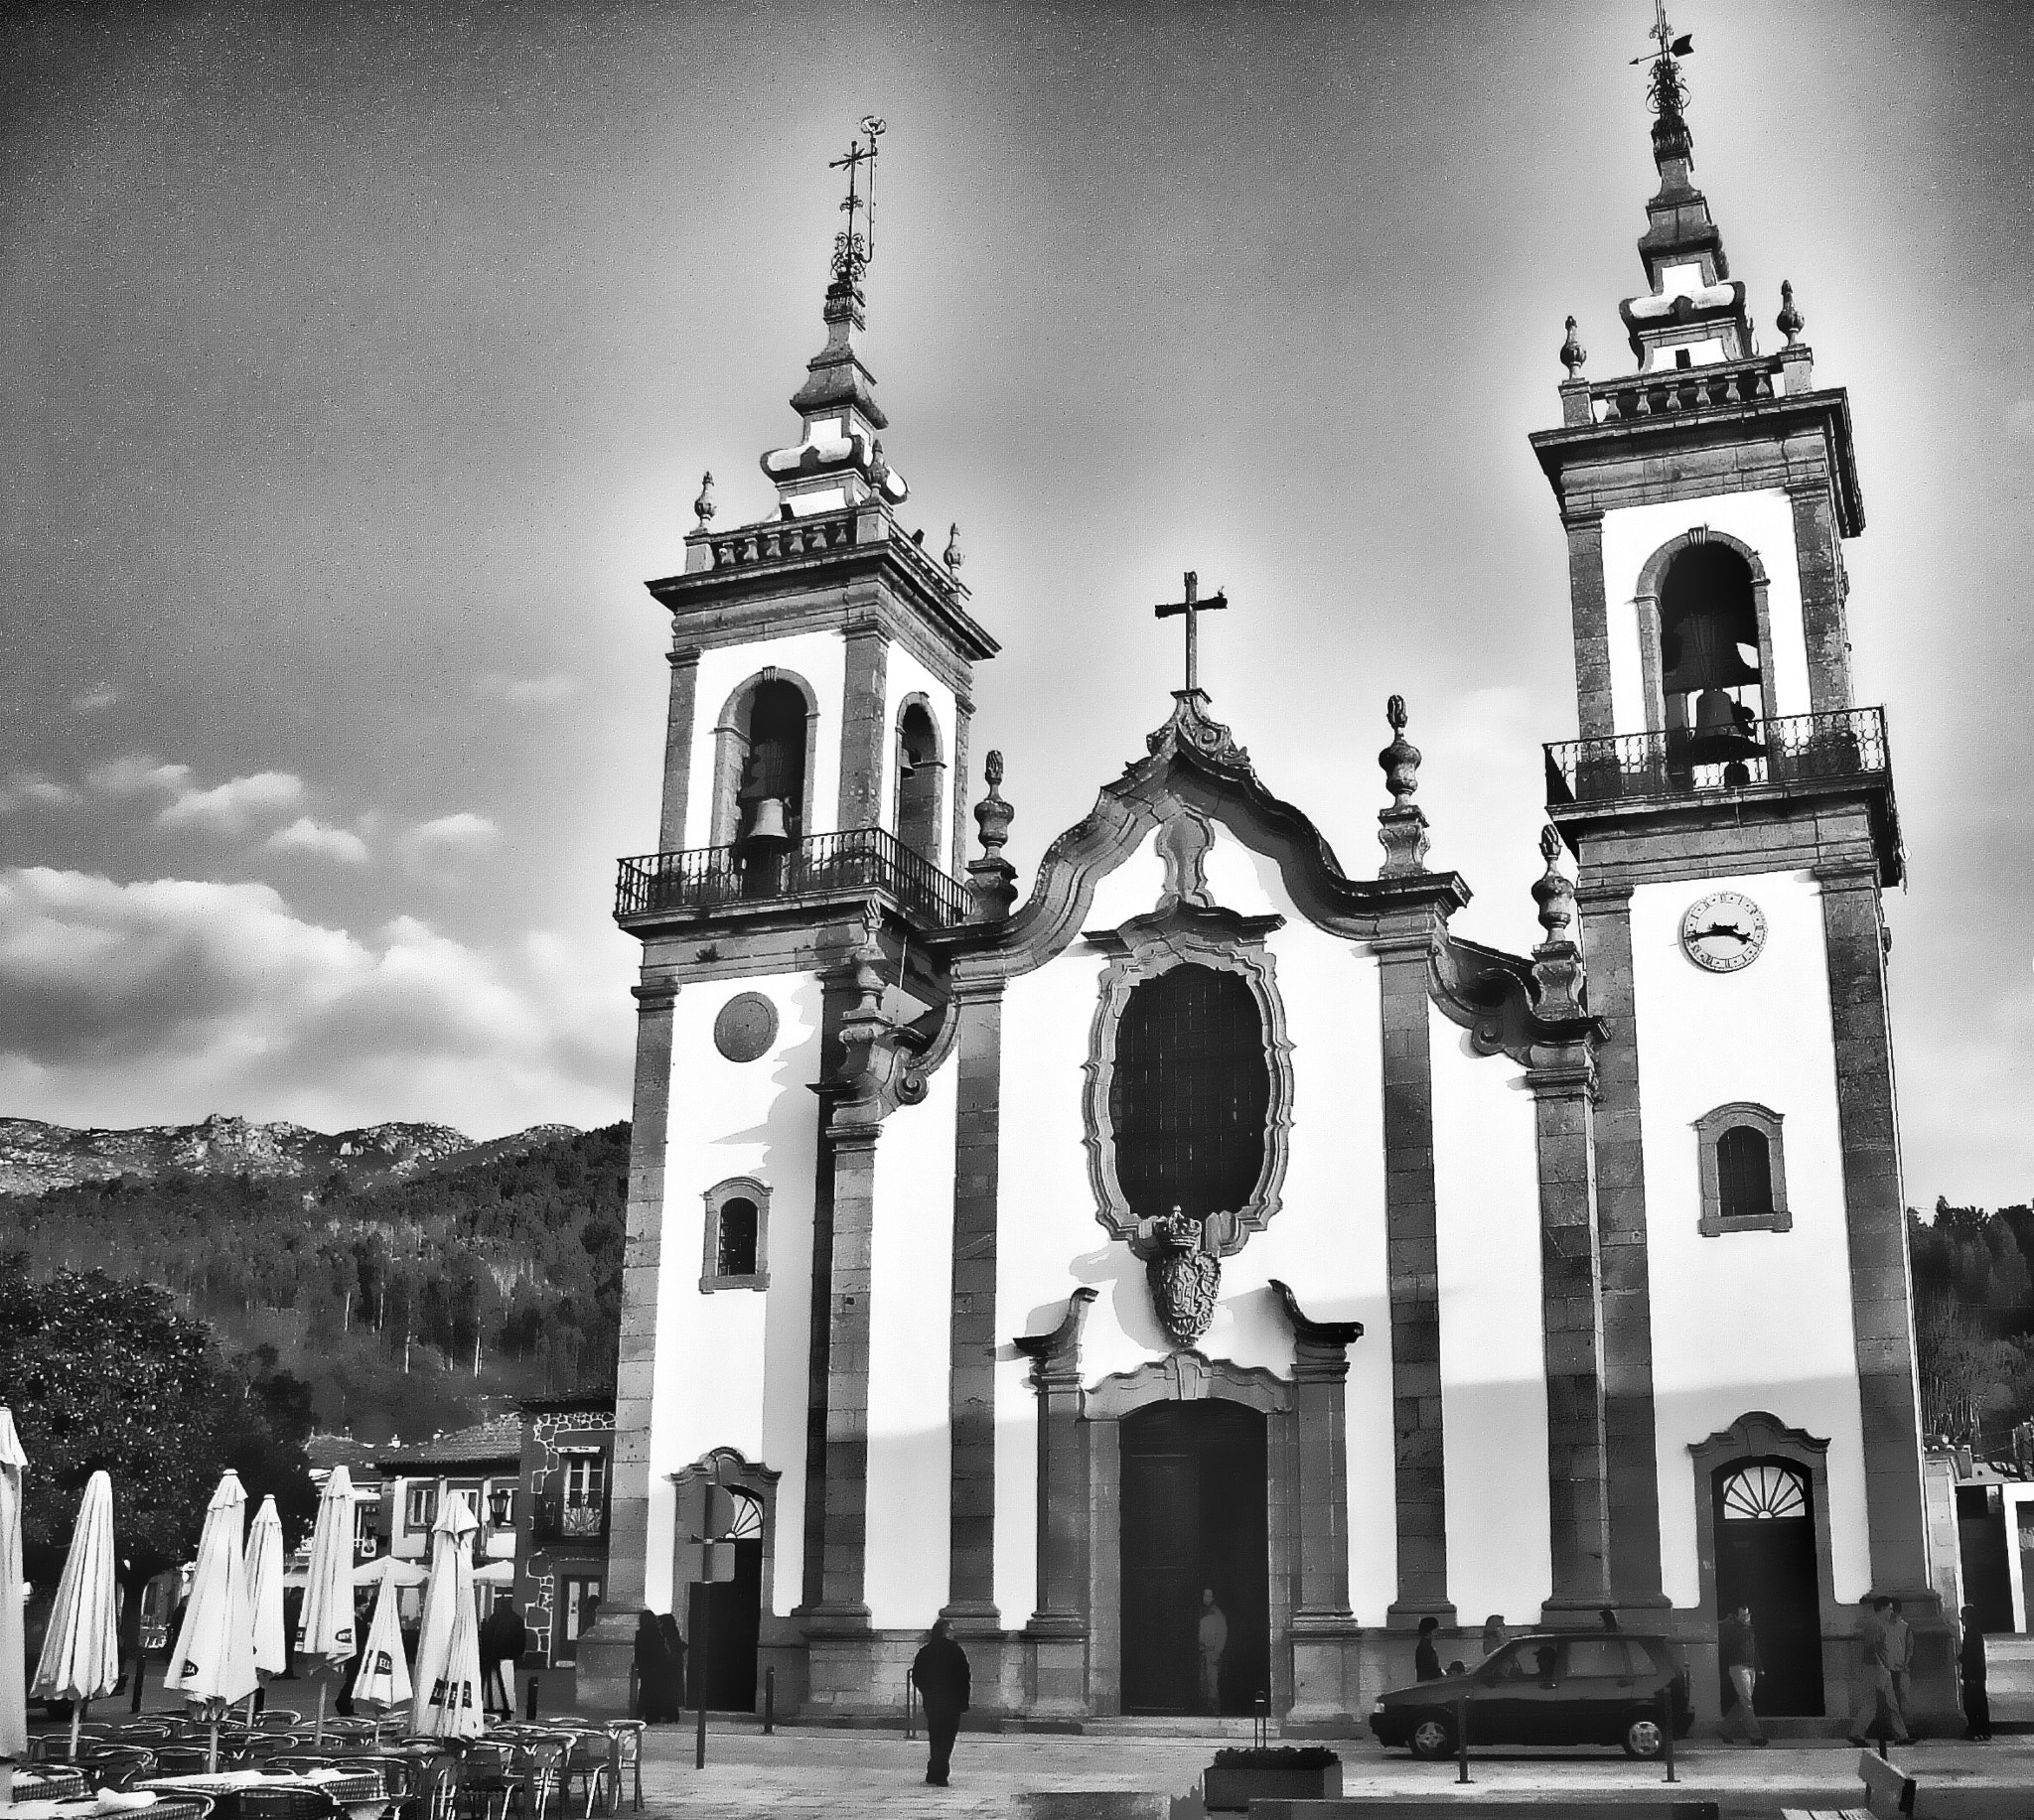 Sony DSC-S600 sample photo. Una bonita iglesia en un pueblo de portugal photography